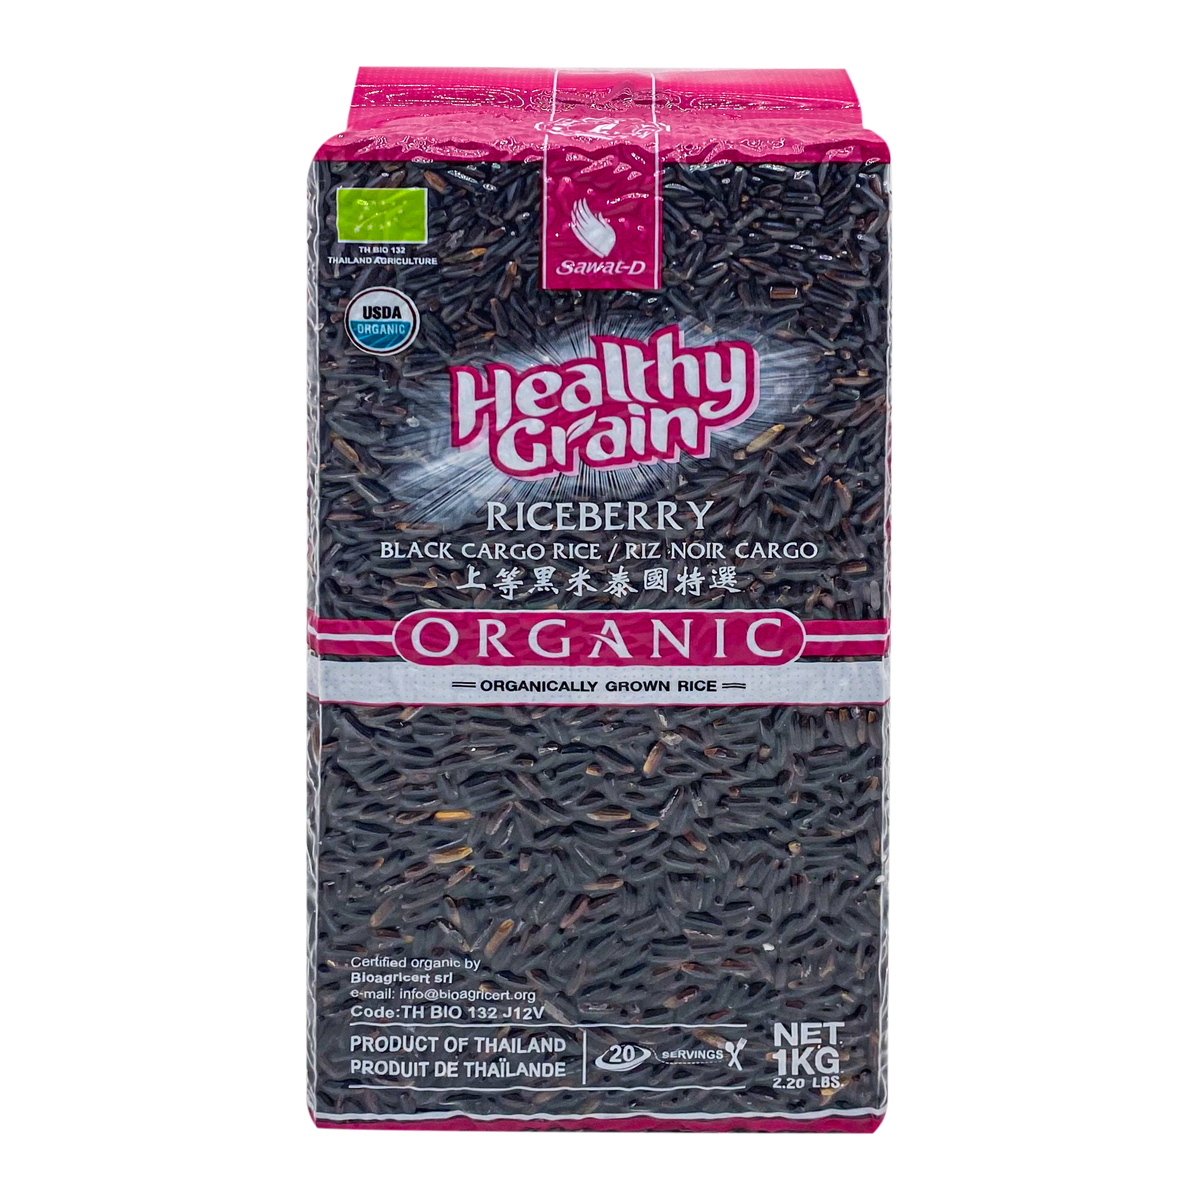 Healthy Grain Organic BLACK CARGO RICE (Органический ЧЁРНЫЙ РИС), 1 кг.